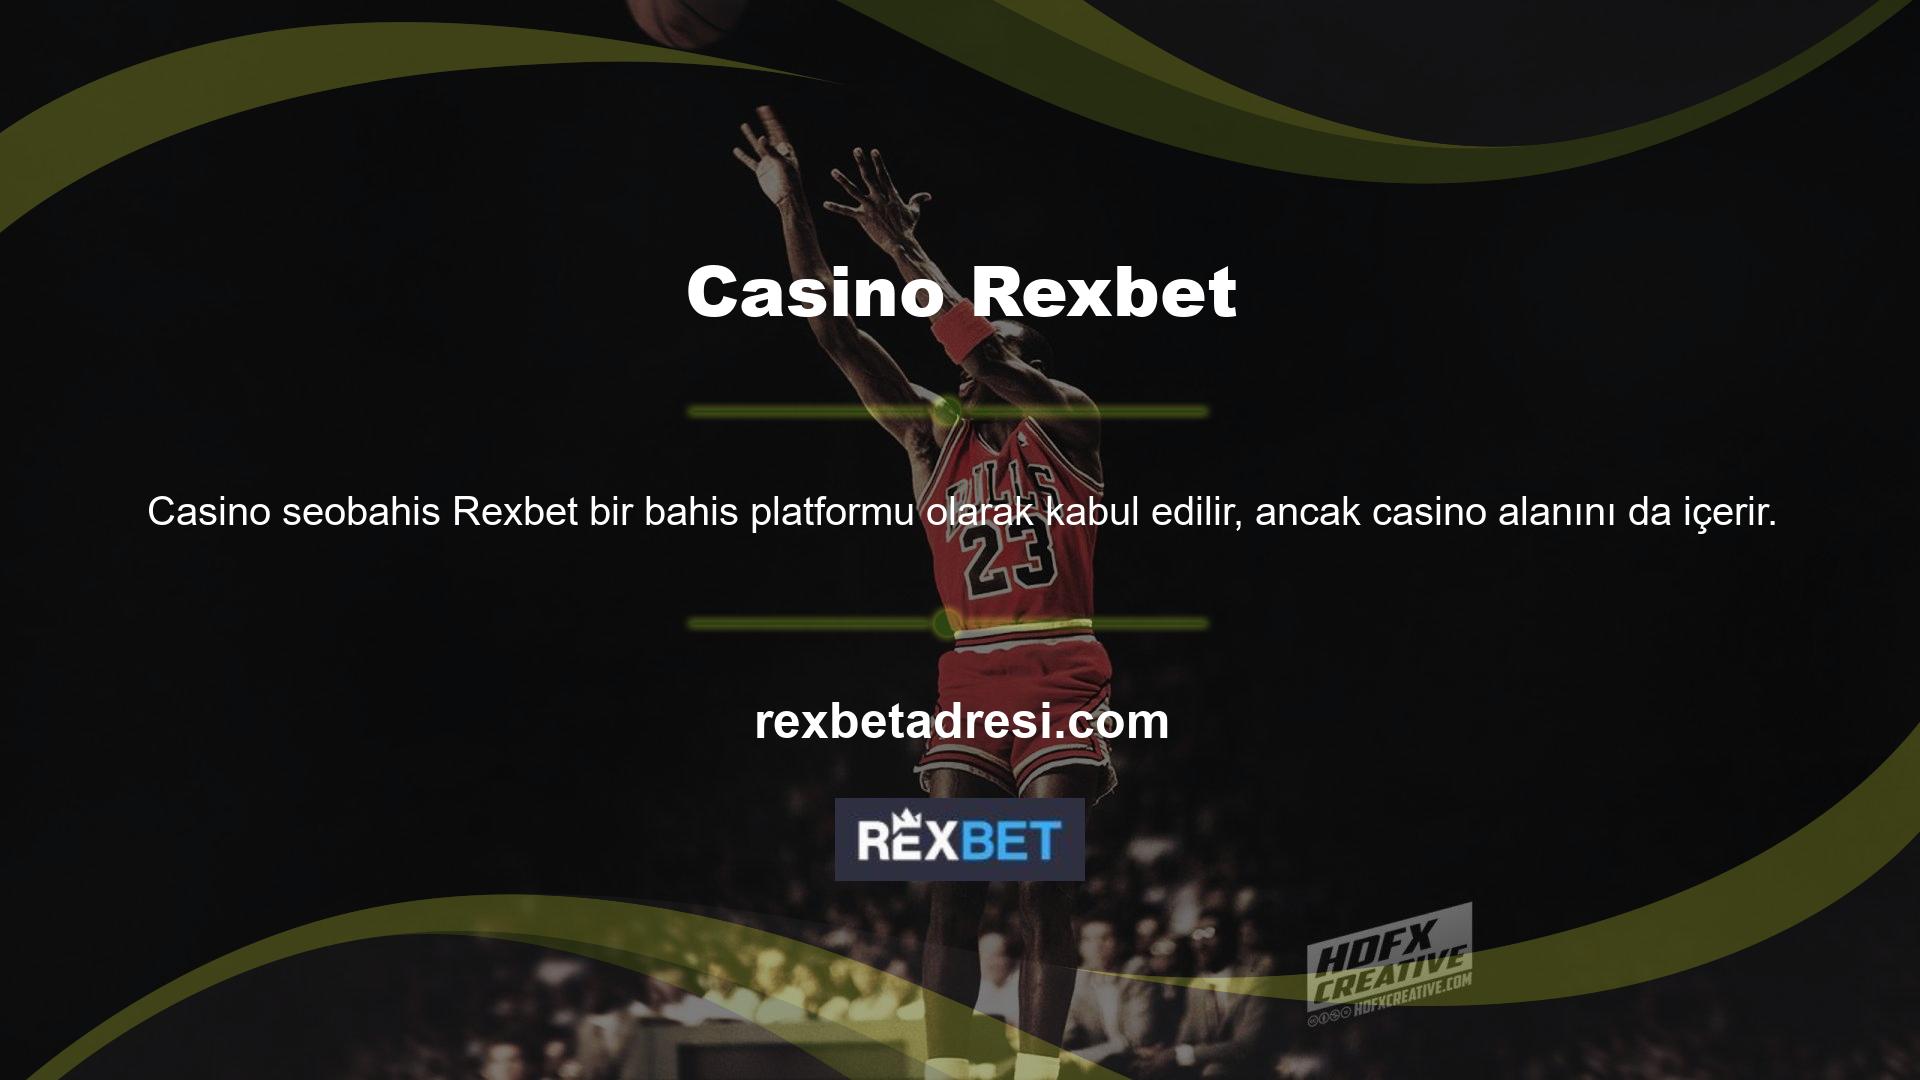 Rexbet Casino canlı ve düzenli casino oyunlarına sahiptir